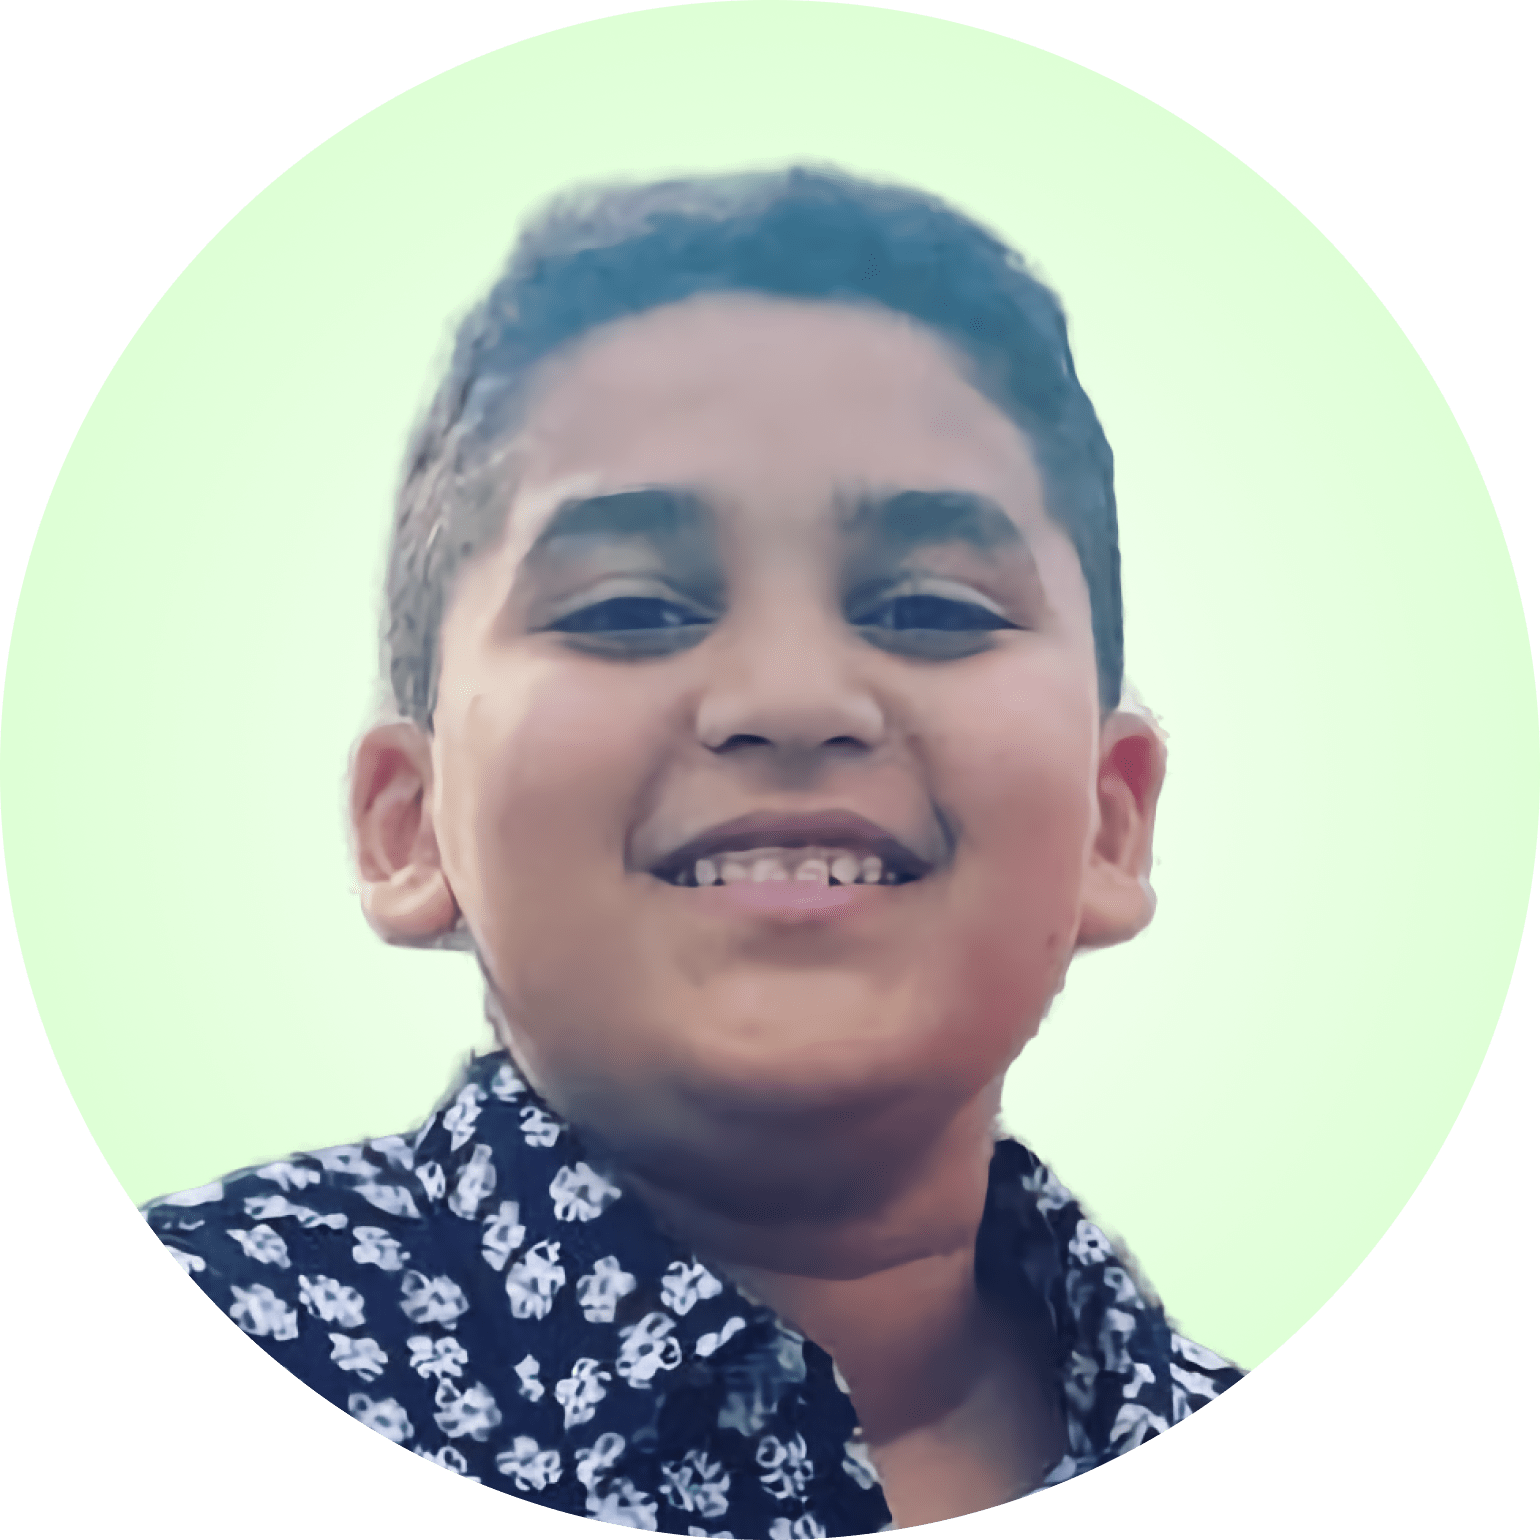 Boy - Age 13 - Ibrahim Ragab